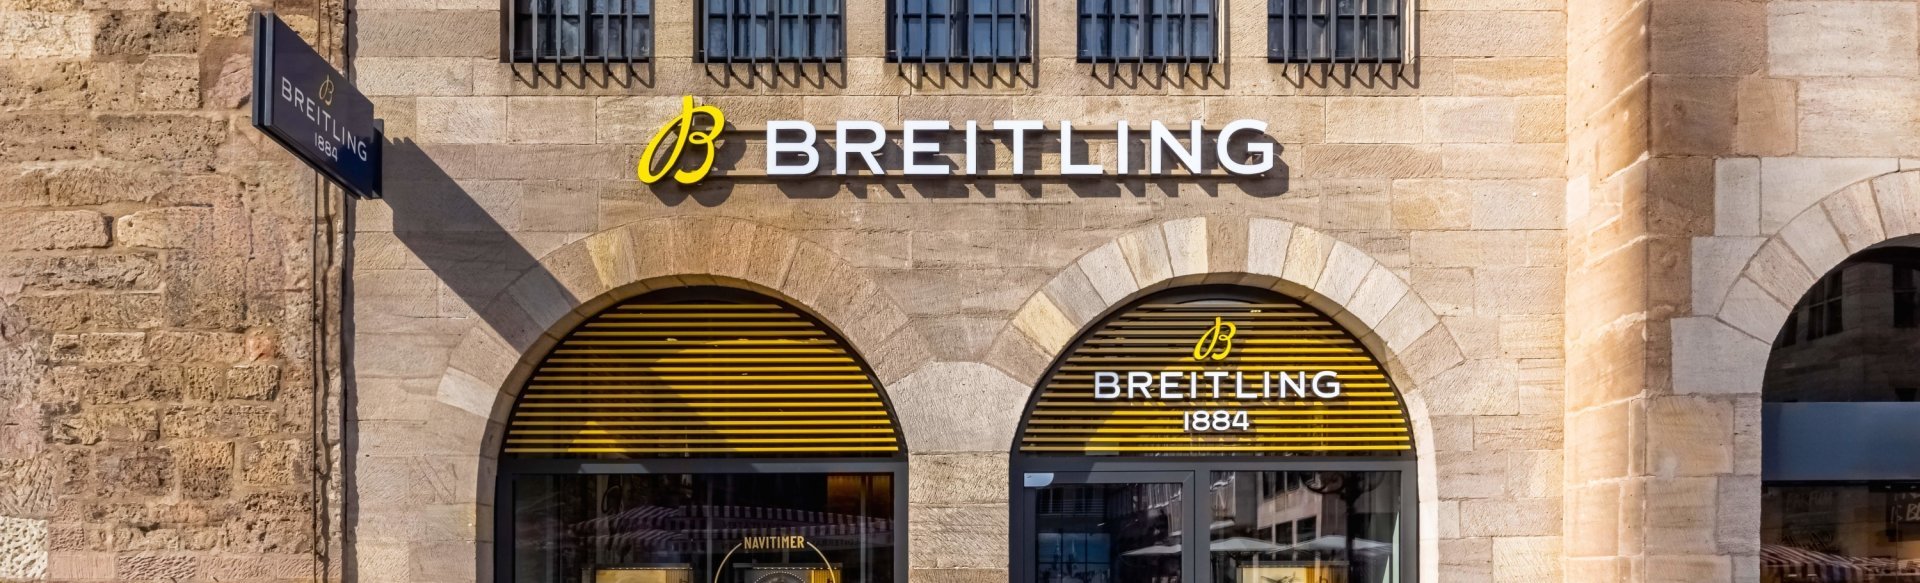 Breitling Boutique NÜrnberg